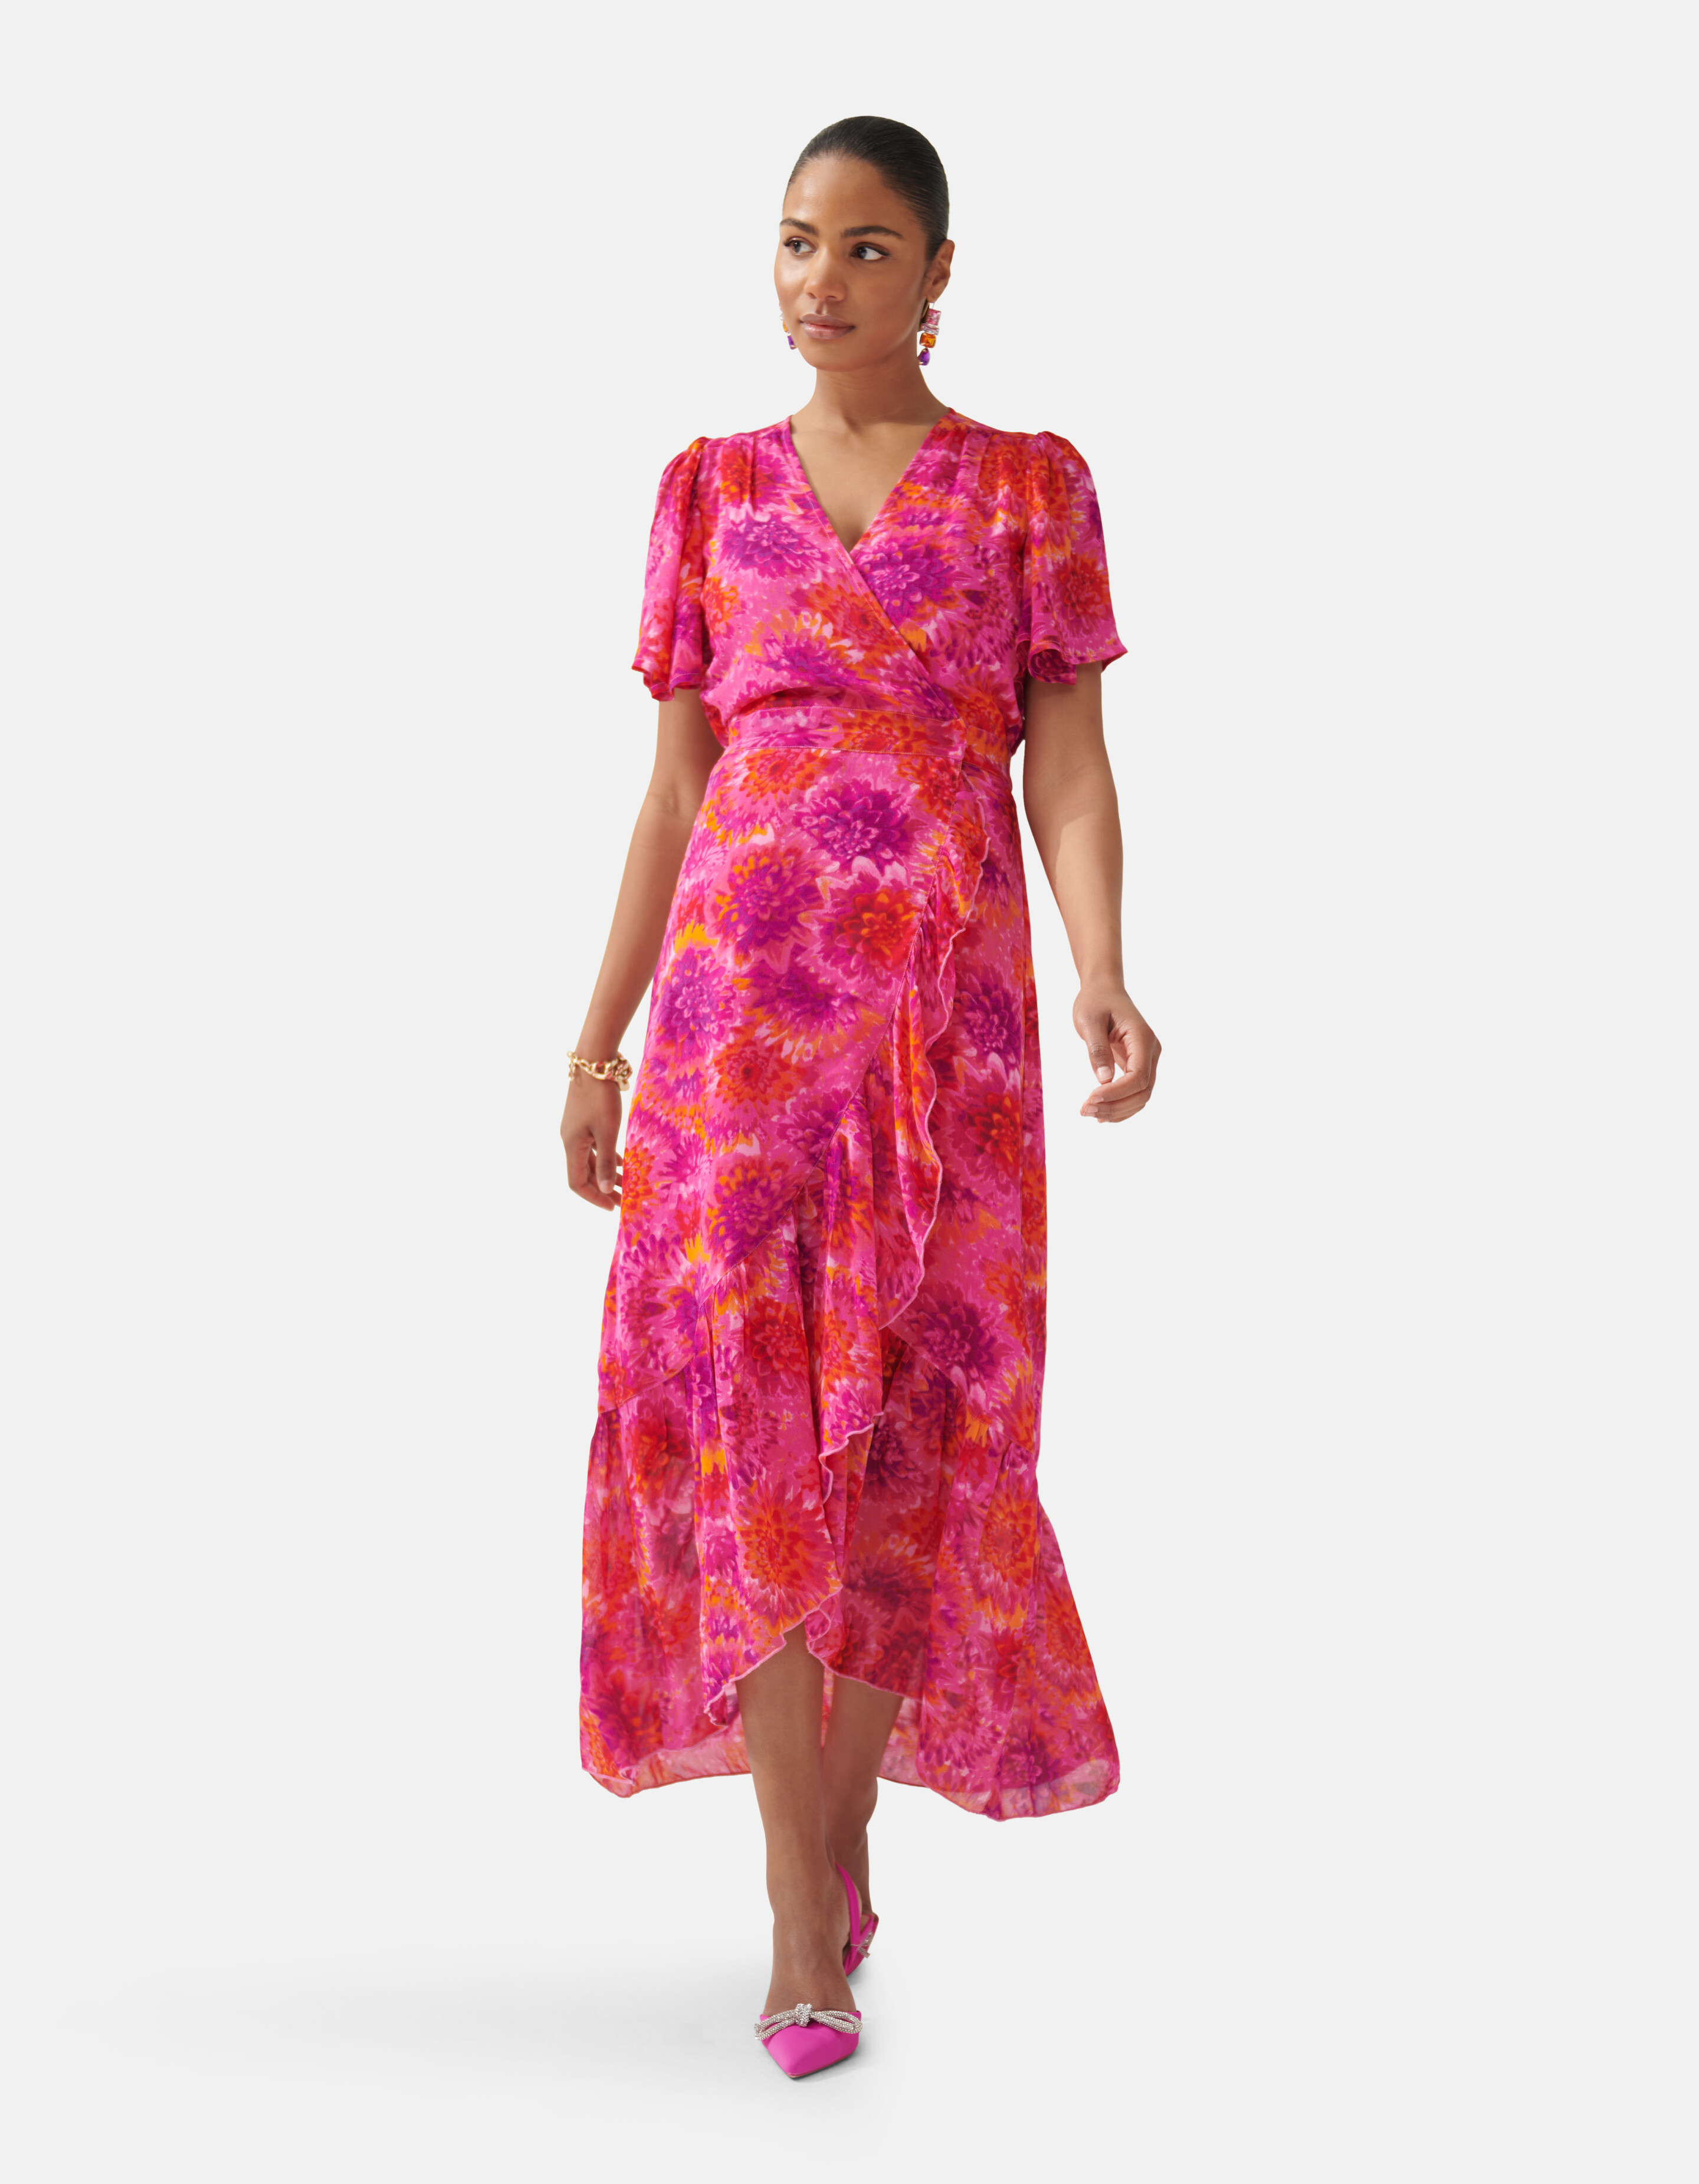 Bedrucktes Kleid Pink By Fred SHOEBY WOMEN